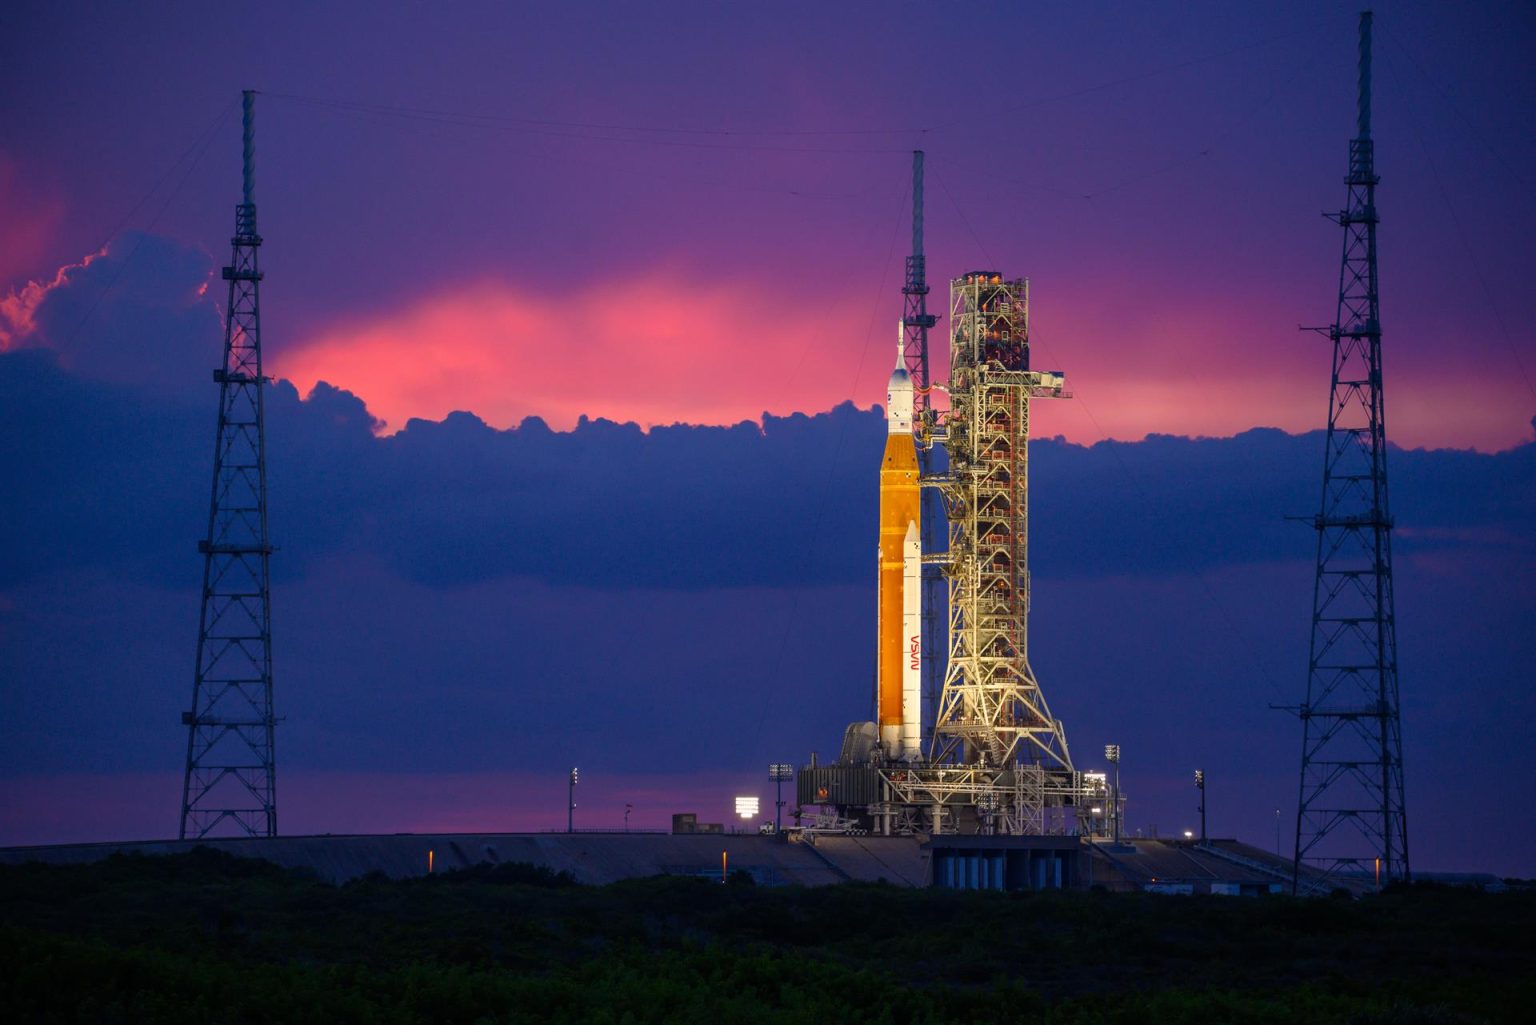 Fotografía del 30 de agosto cedida por la NASA donde se muestra el cohete del Sistema de Lanzamiento Espacial (SLS) con la nave espacial Orion a bordo mientras está encima del lanzador móvil en la plataforma de Lanzamiento 39B en el Centro Espacial Kennedy en Merritt Island, Florida (EEUU). EFE/ Eric Bordelon Nasa SOLO USO EDITORIAL SOLO DISPONIBLE PARA ILUSTRAR LA NOTICIA QUE ACOMPAÑA (CRÉDITO OBLIGATORIO)